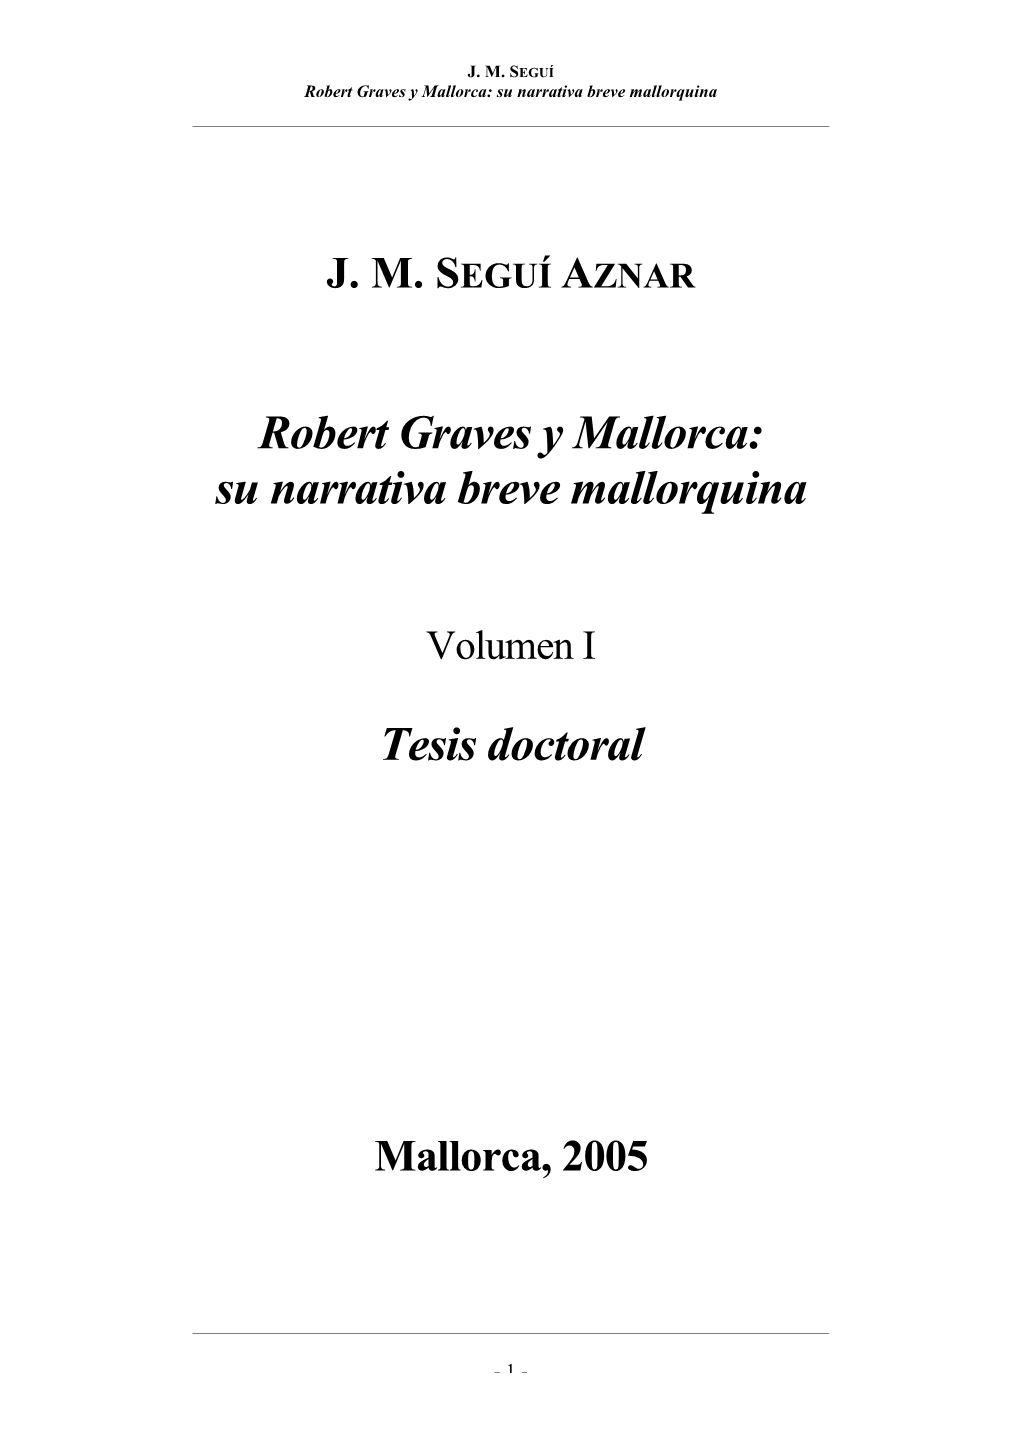 Robert Graves Y Mallorca: Su Narrativa Breve Mallorquina